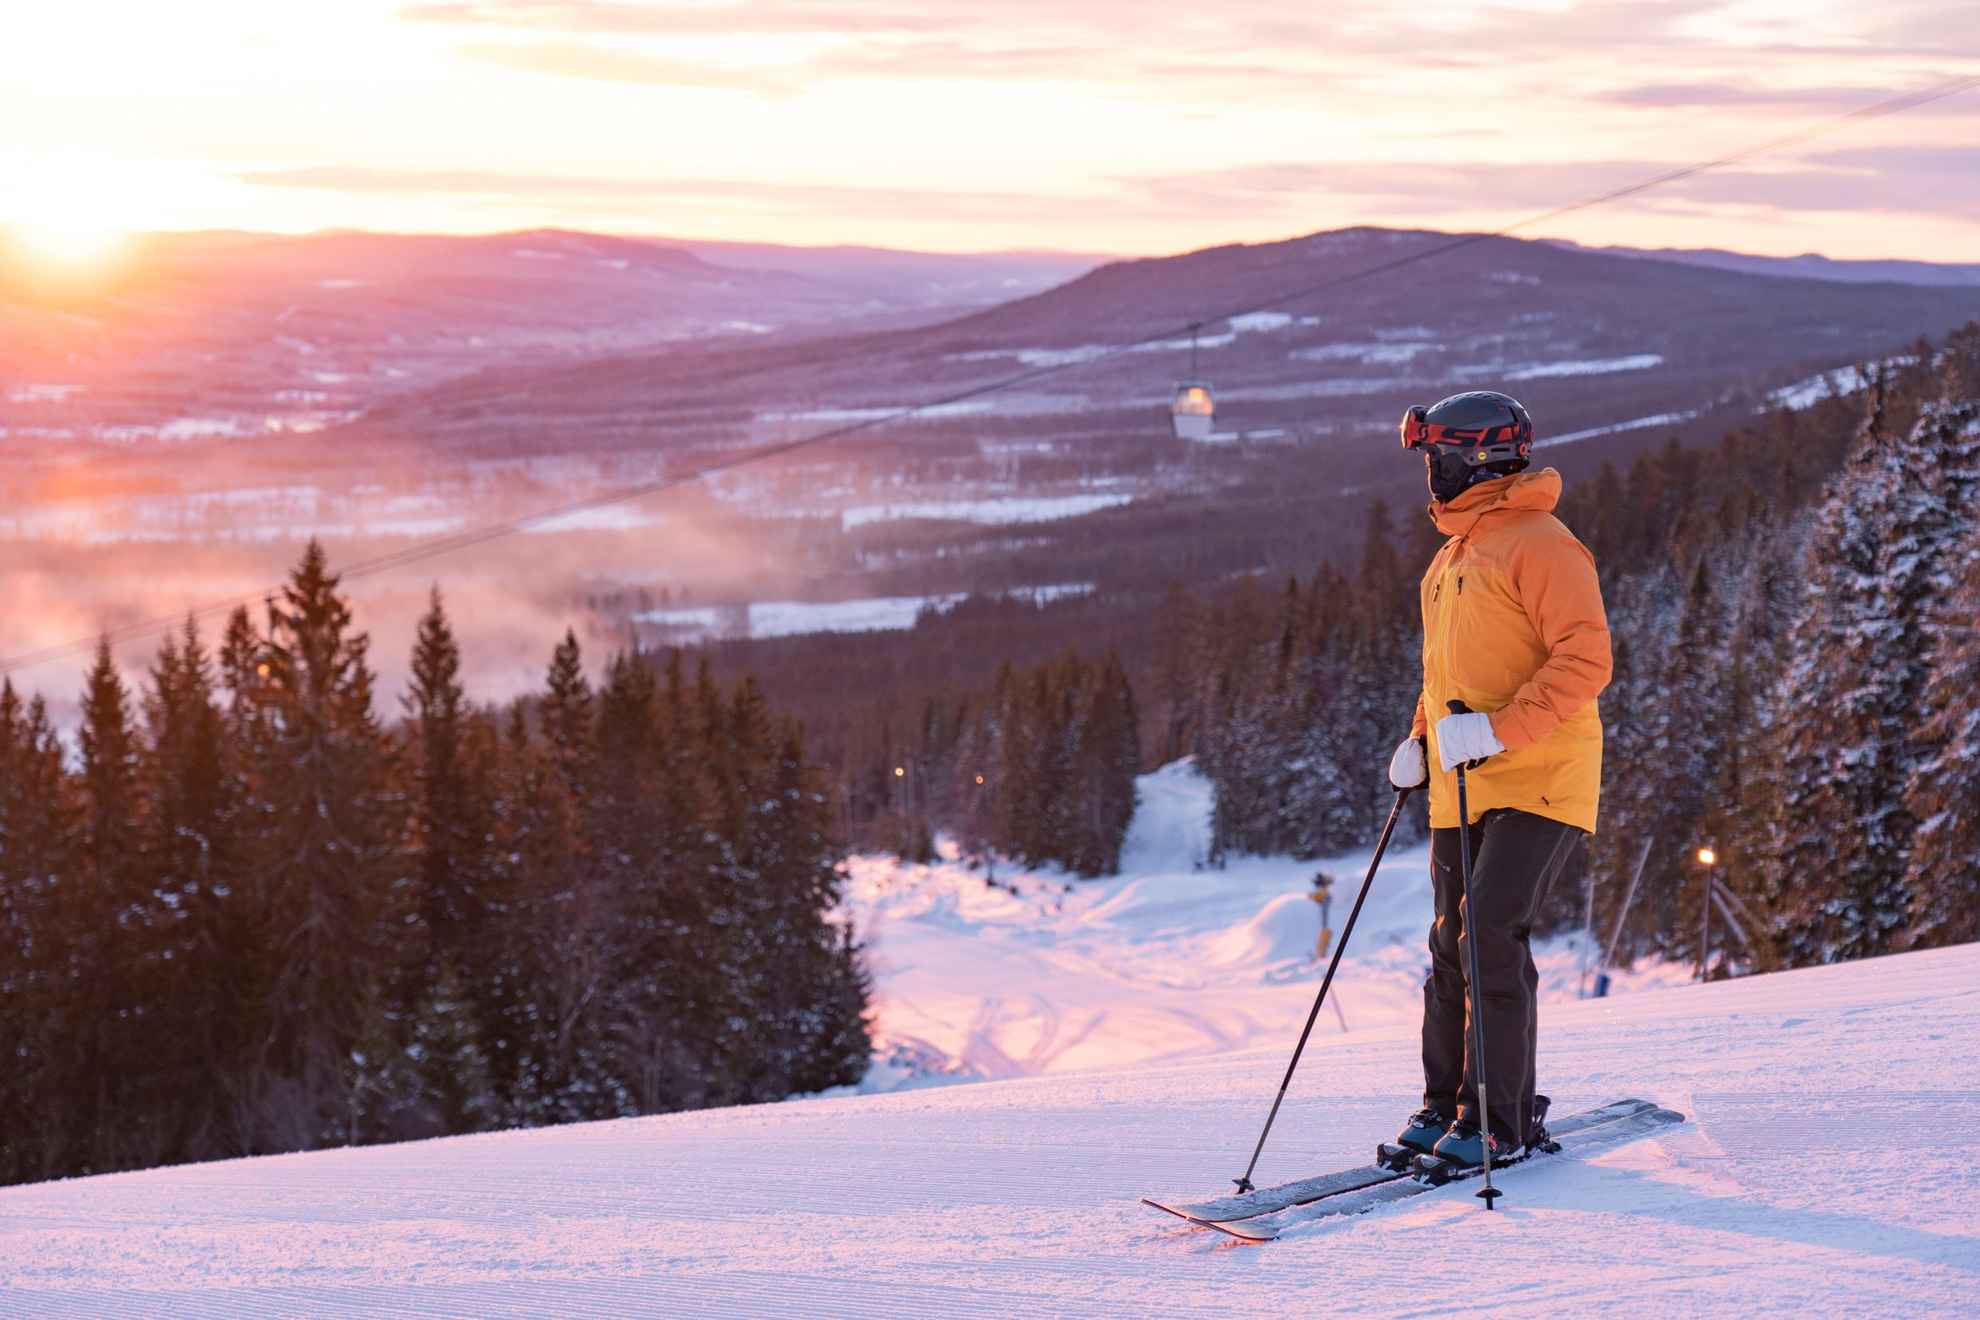 Une personne avec du matériel de ski se tient sur une piste de ski en regardant le coucher du soleil.